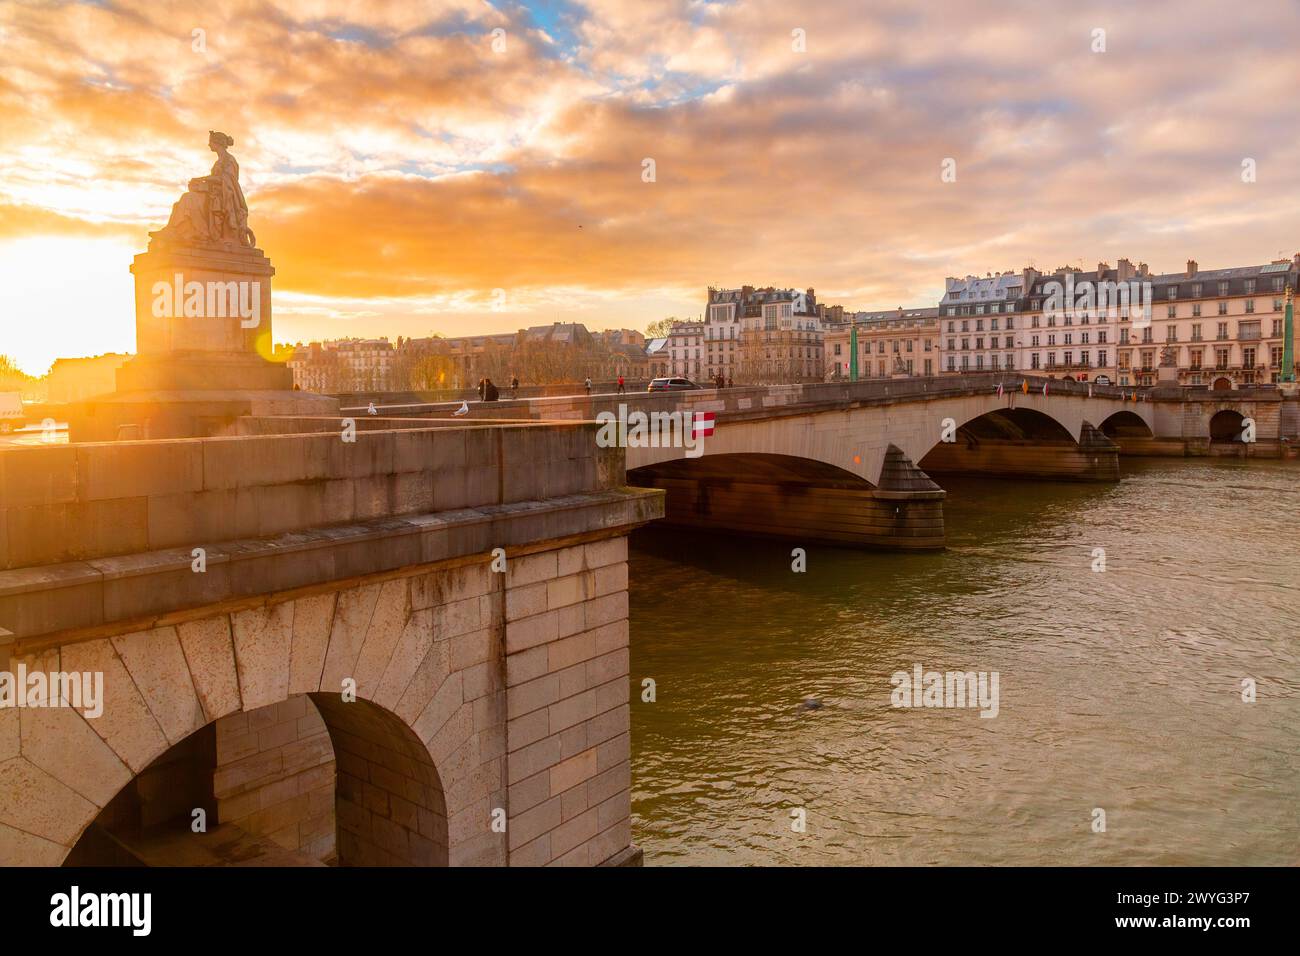 París, Francia - 20 de enero de 2022: Edificios y arquitectura típica francesa alrededor del río Sena en París, la capital francesa Foto de stock